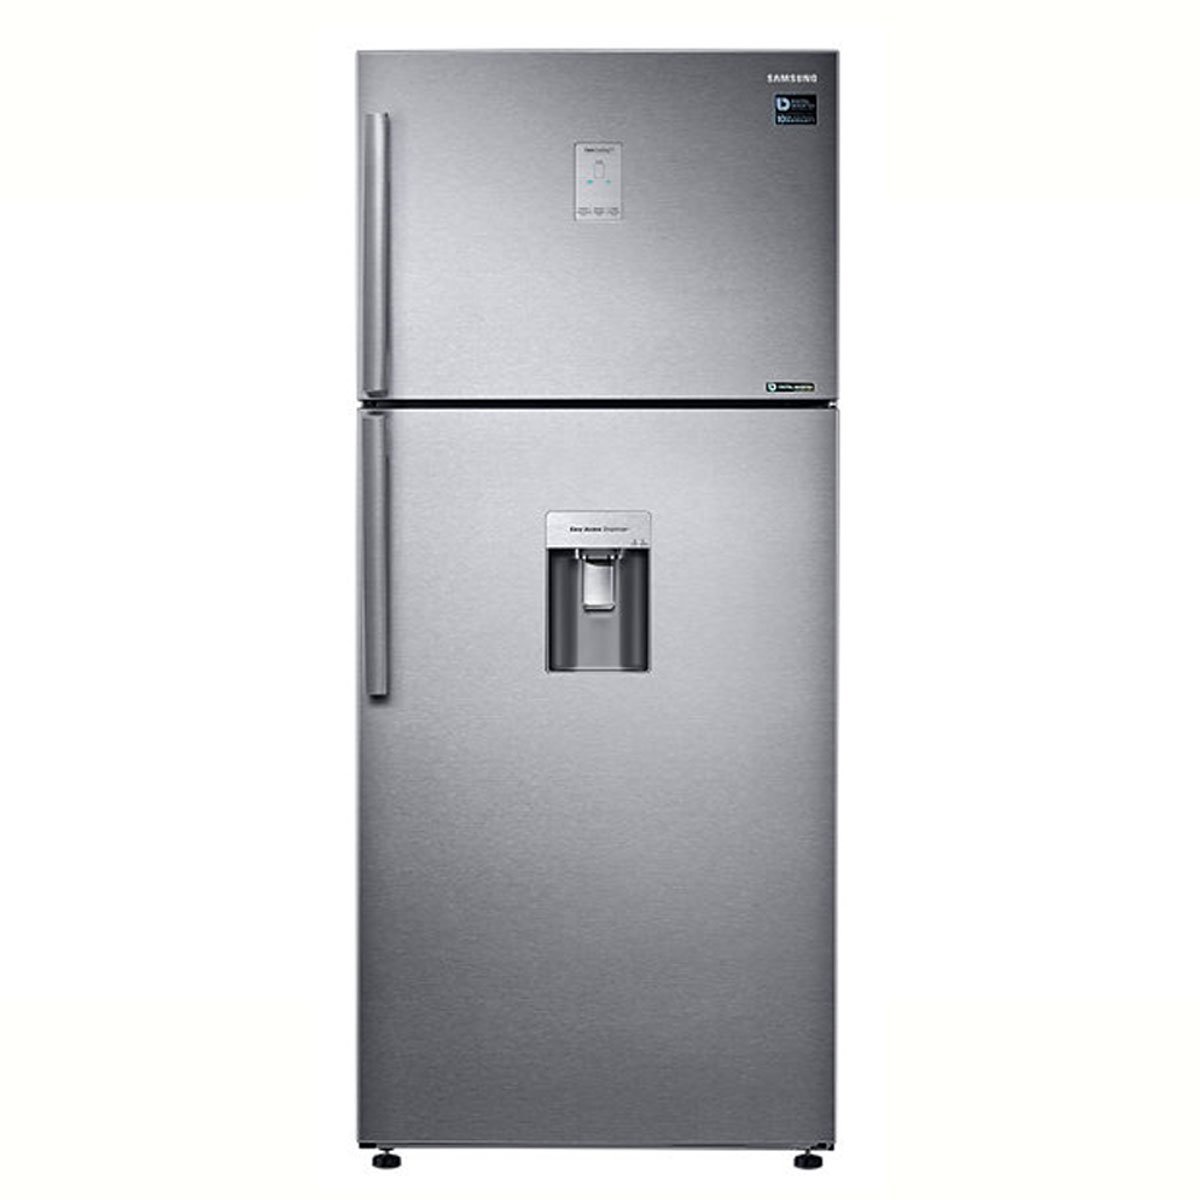 Refrigerador Samsung Top Mount 19 Pies Easy Clean Steel